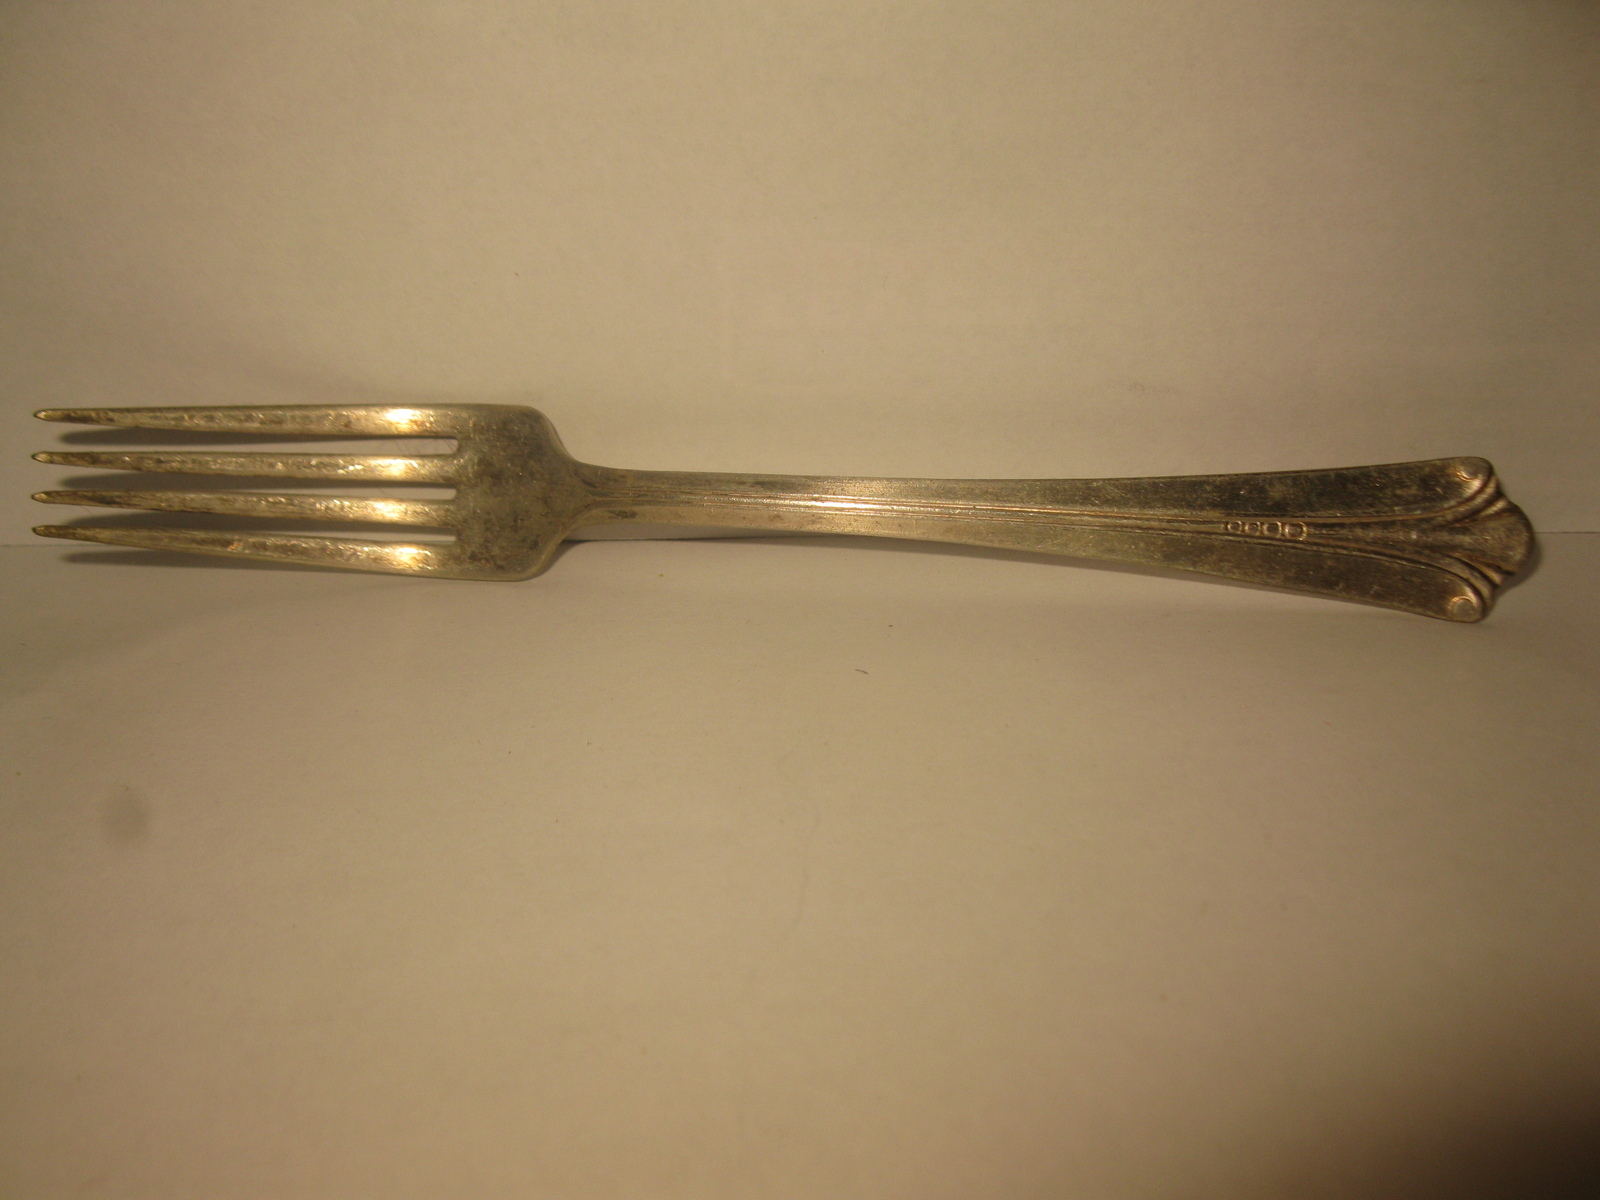 (MX-1) Vintage Silver Plated Dinner Fork - hallmarked -> EPNS USA on back - $6.00